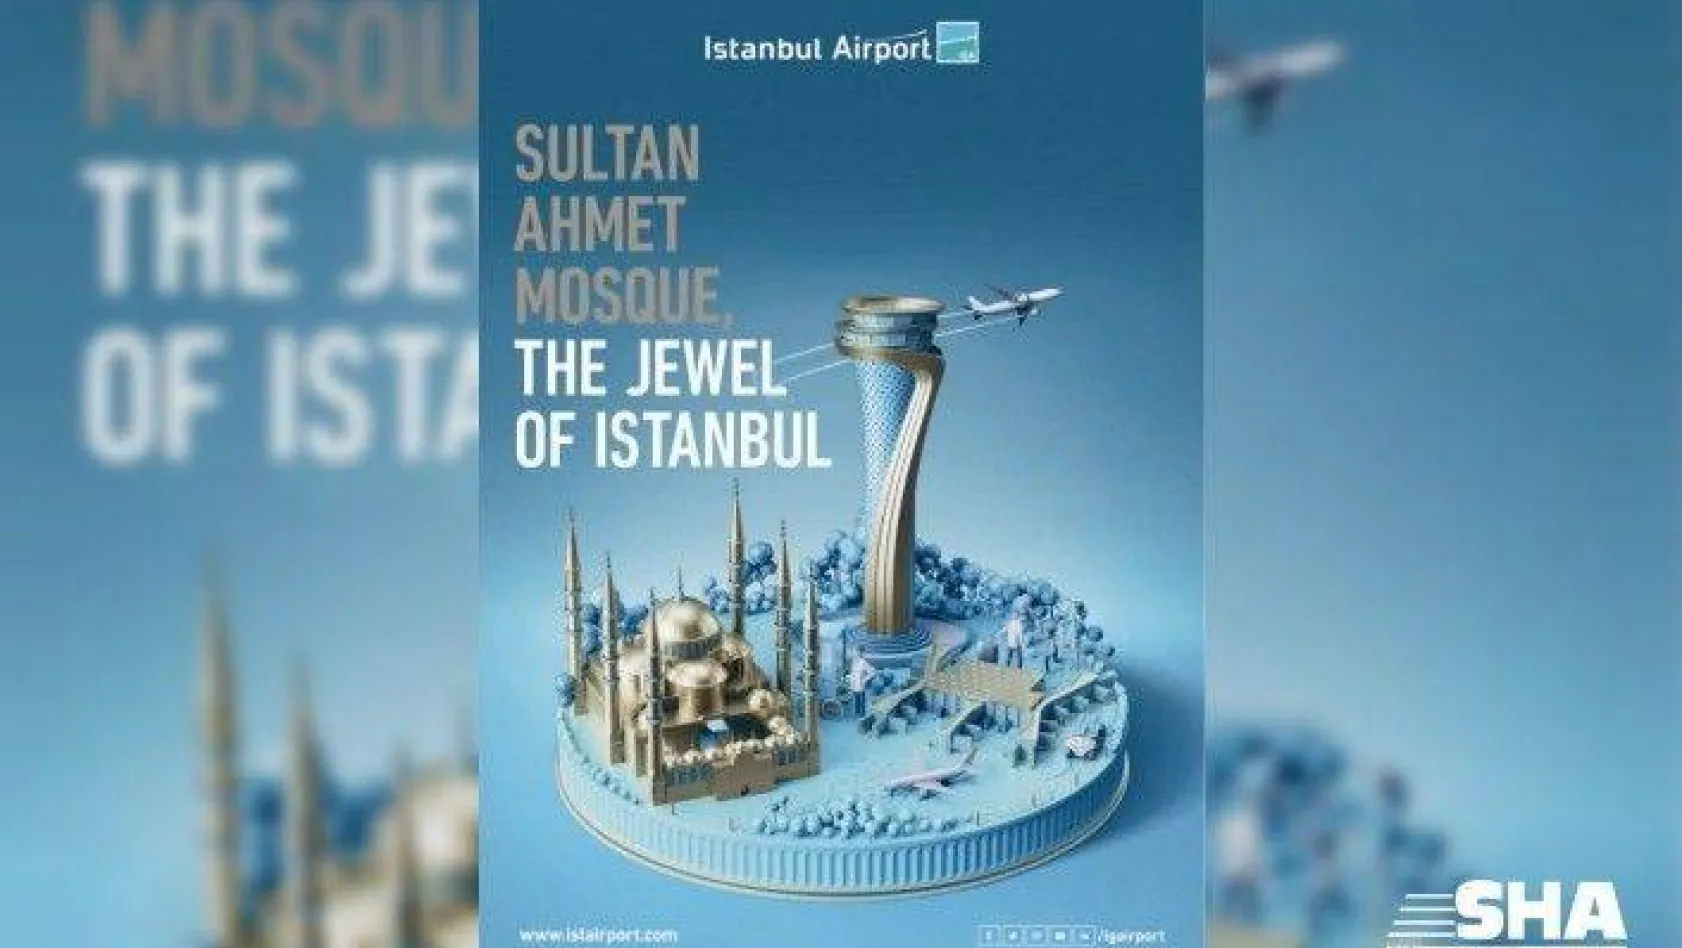 İstanbul Havalimanı'nın yeni görselleri yolcuların beğenisine sunuldu